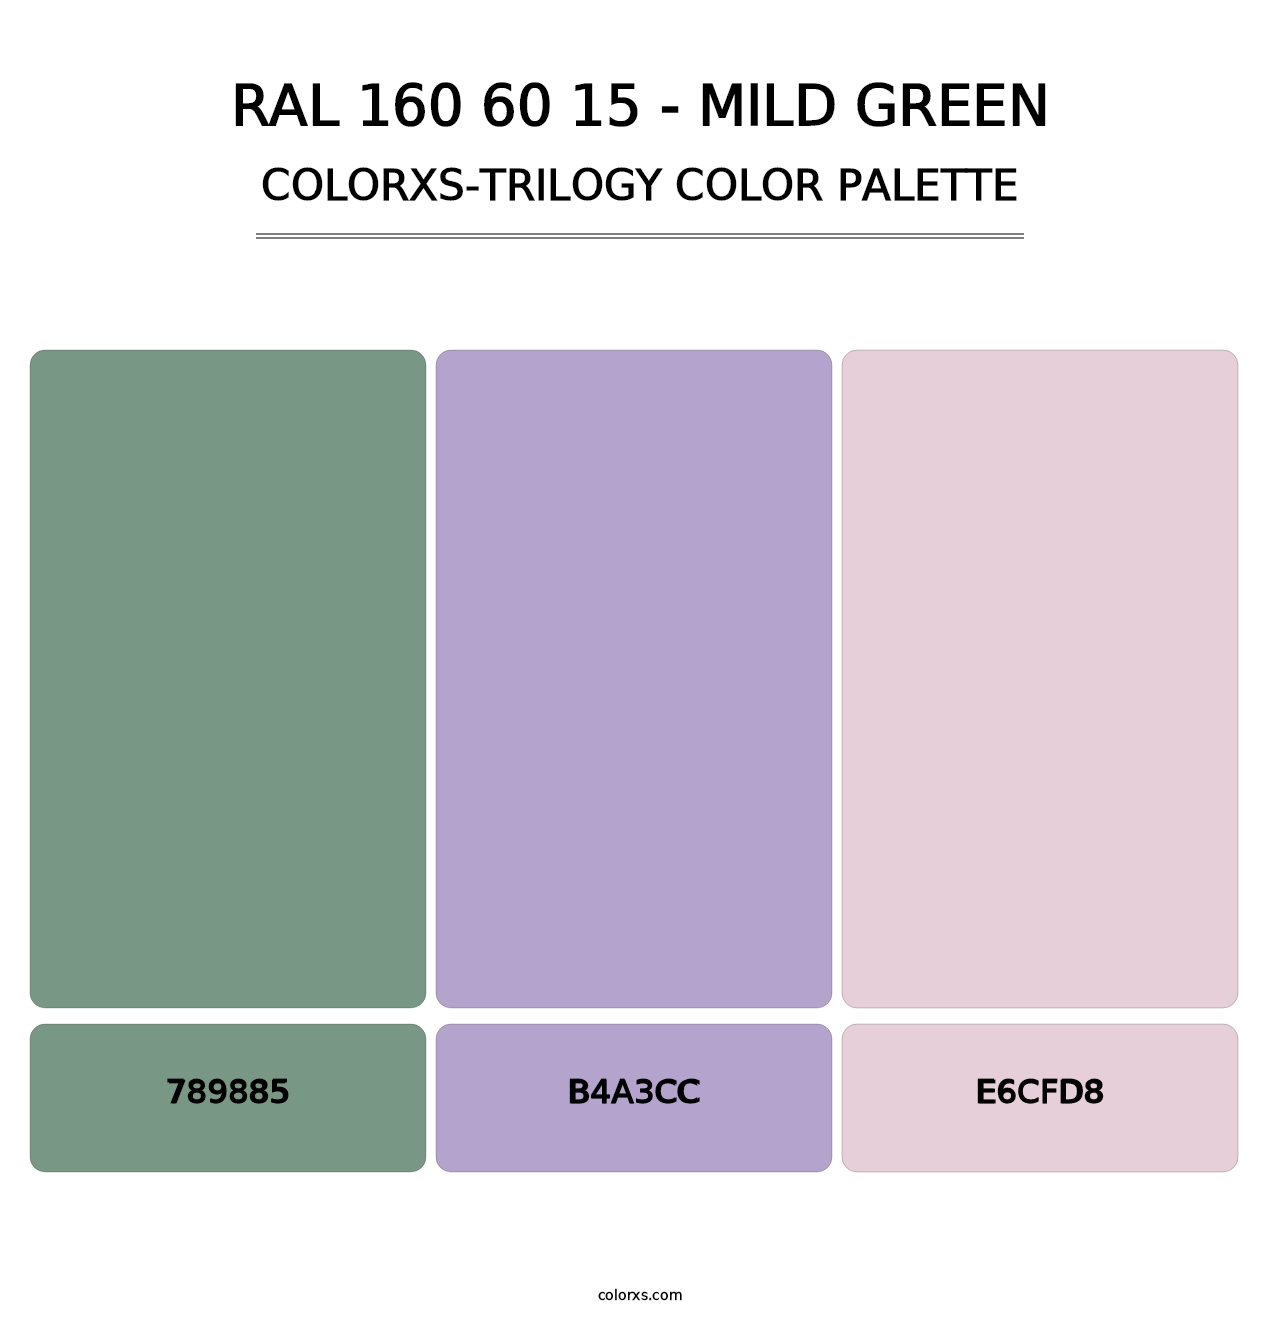 RAL 160 60 15 - Mild Green - Colorxs Trilogy Palette